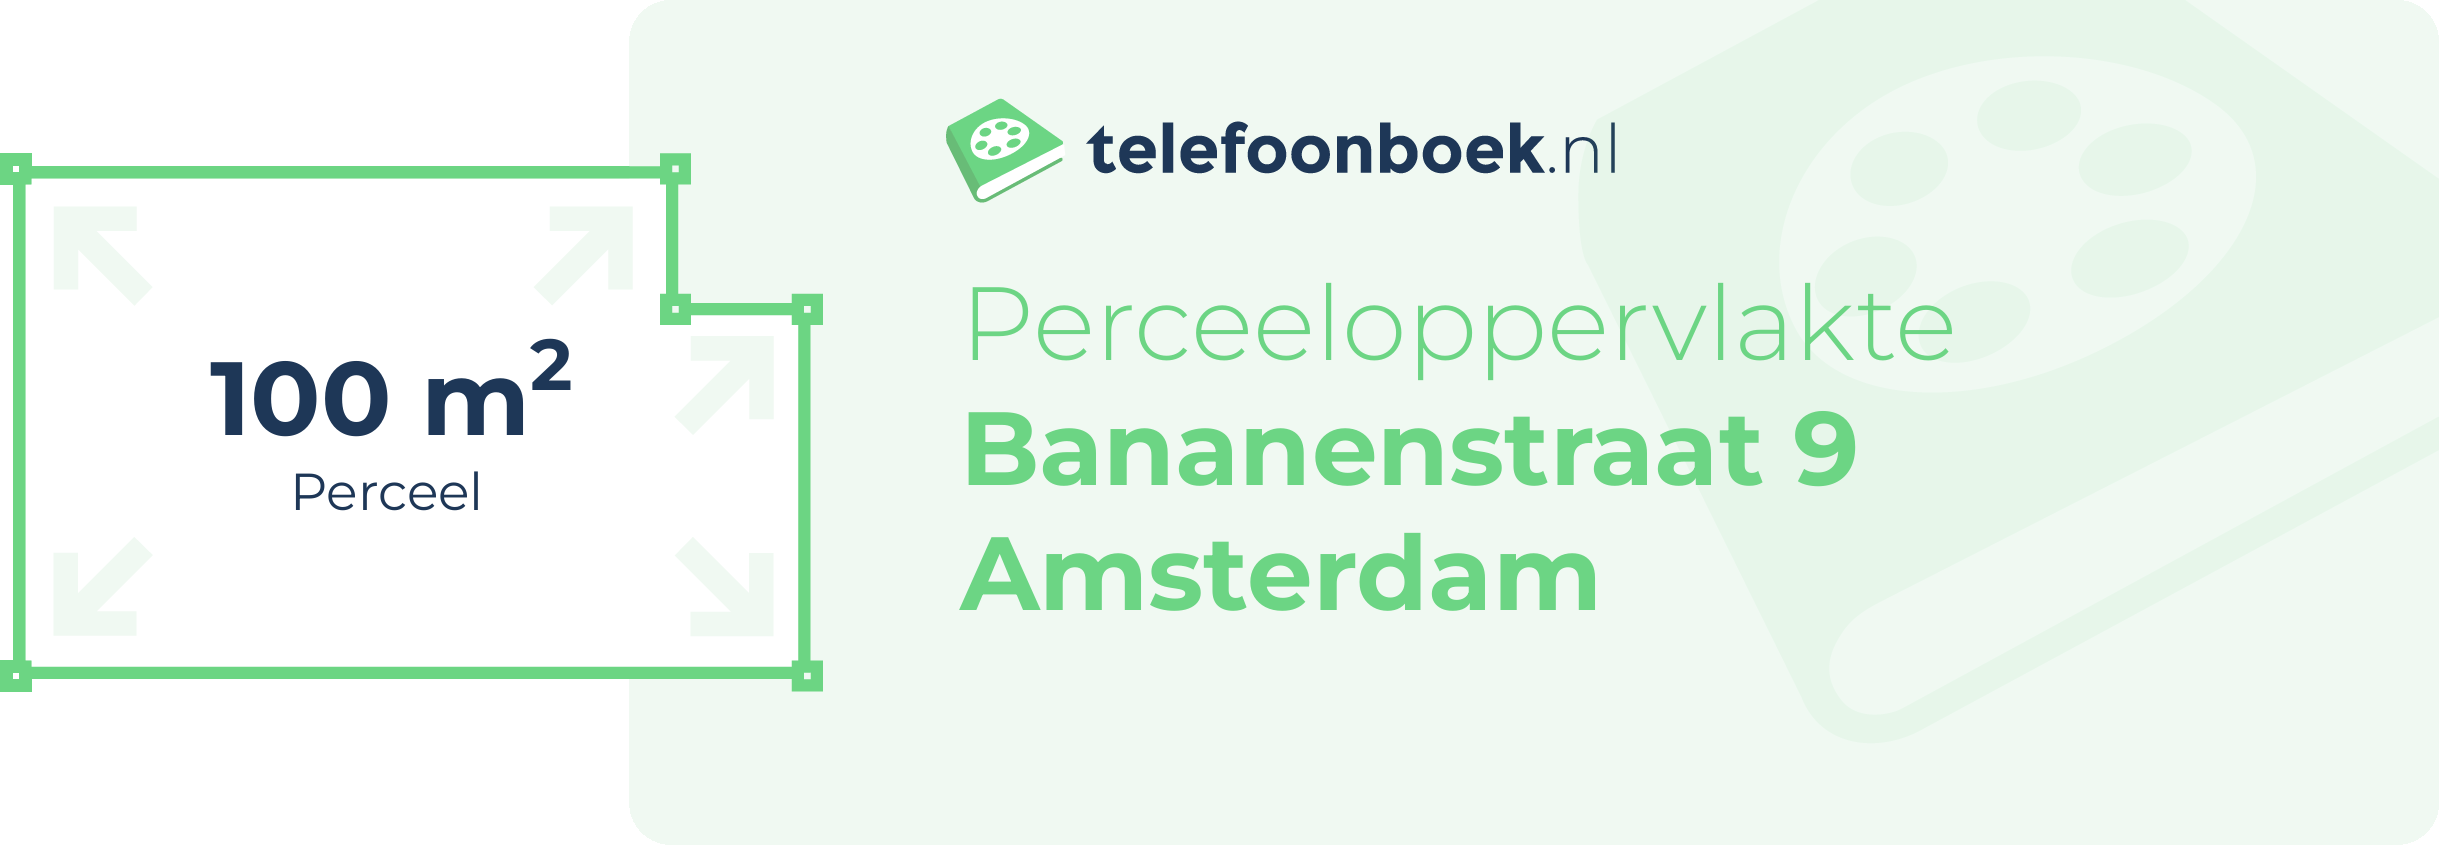 Perceeloppervlakte Bananenstraat 9 Amsterdam